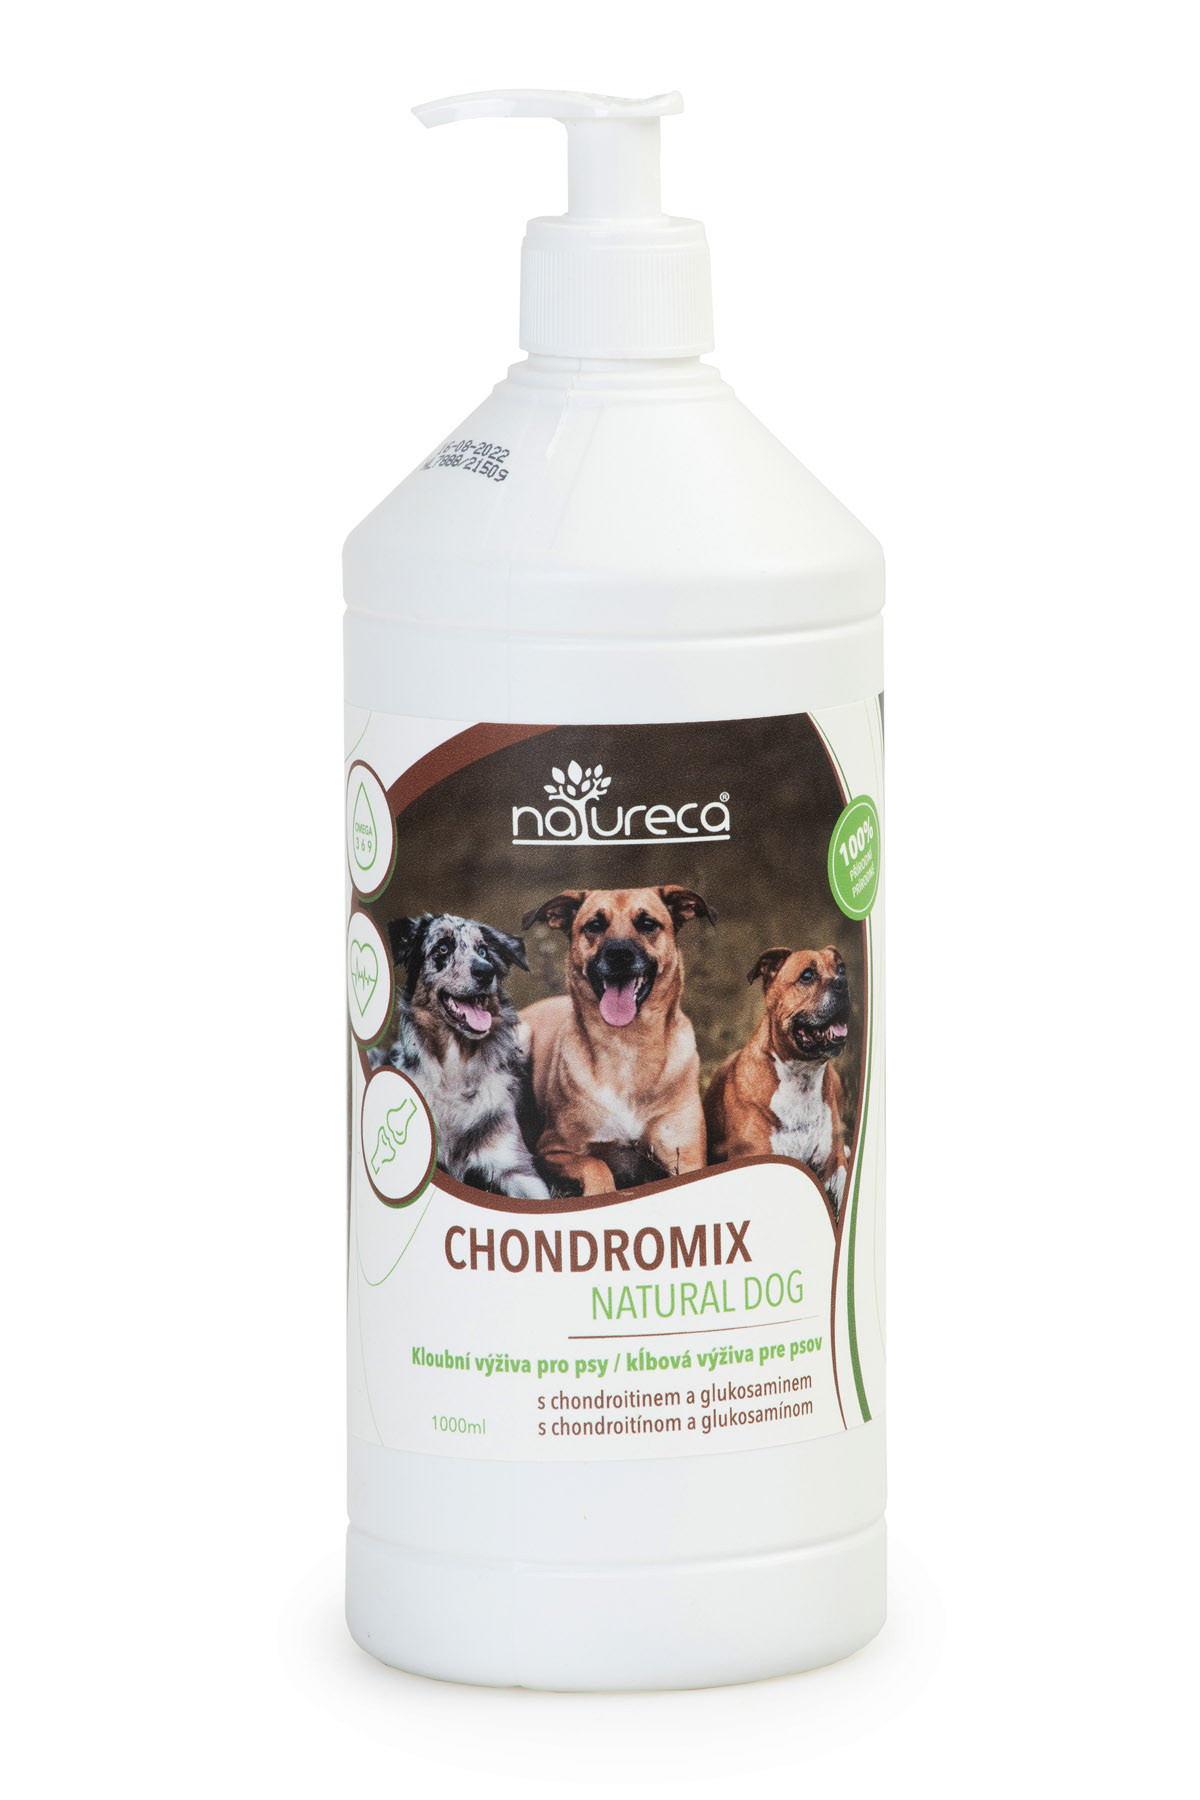 Chondromix Natural Dog 1000ml, kloubní výživa /v nabídce 2x500ml za cenu 1L/